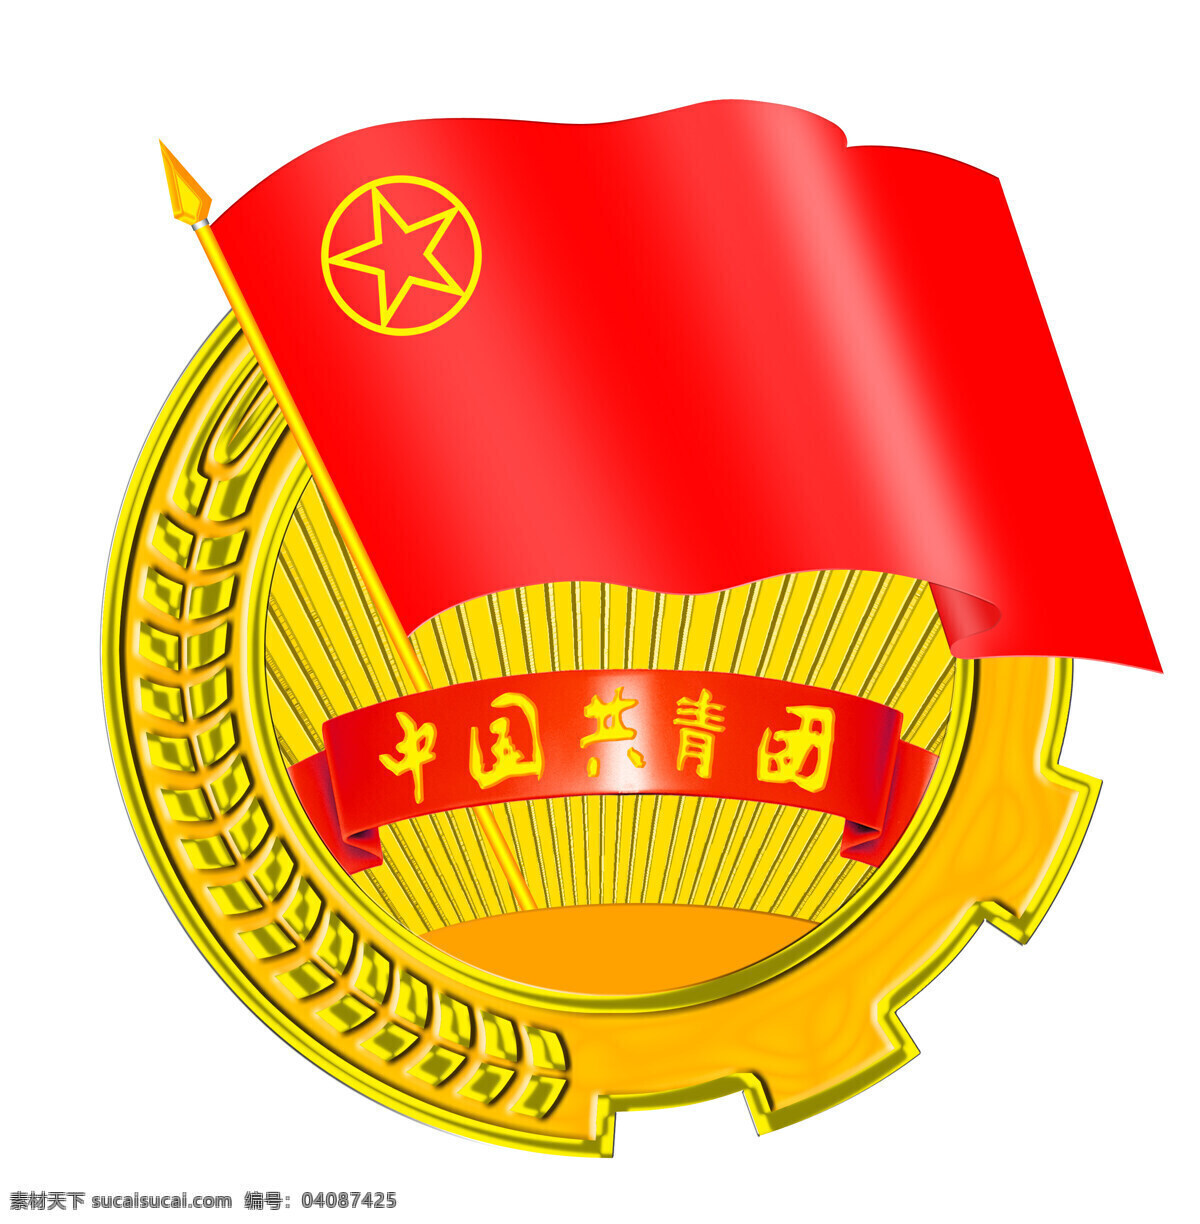 团徽 中国 共青团 标志图标 公共标识标志 设计图库